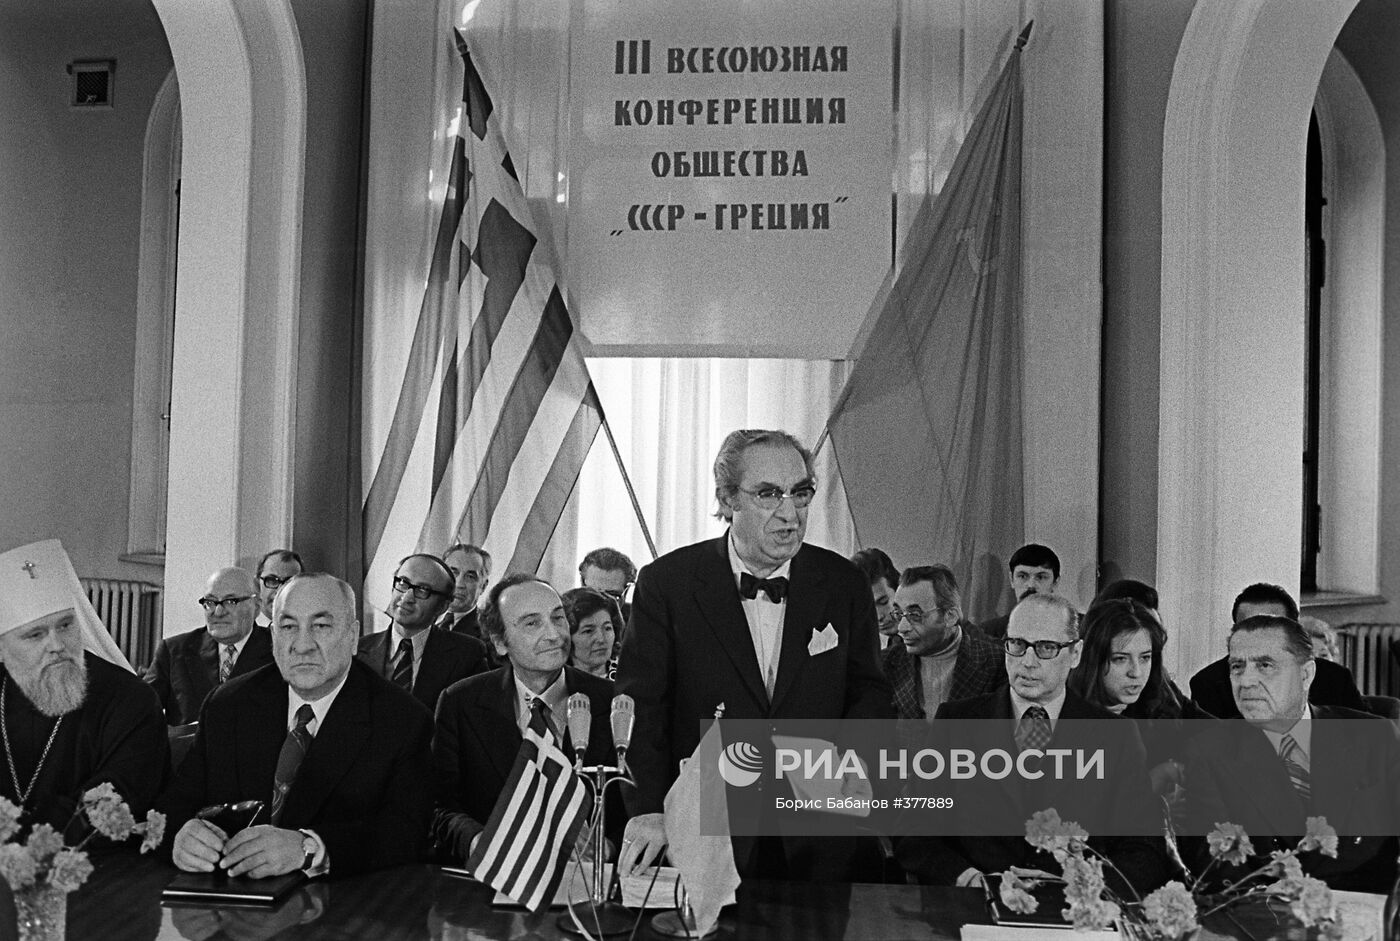 Открытие конференции общества "СССР-Греция"